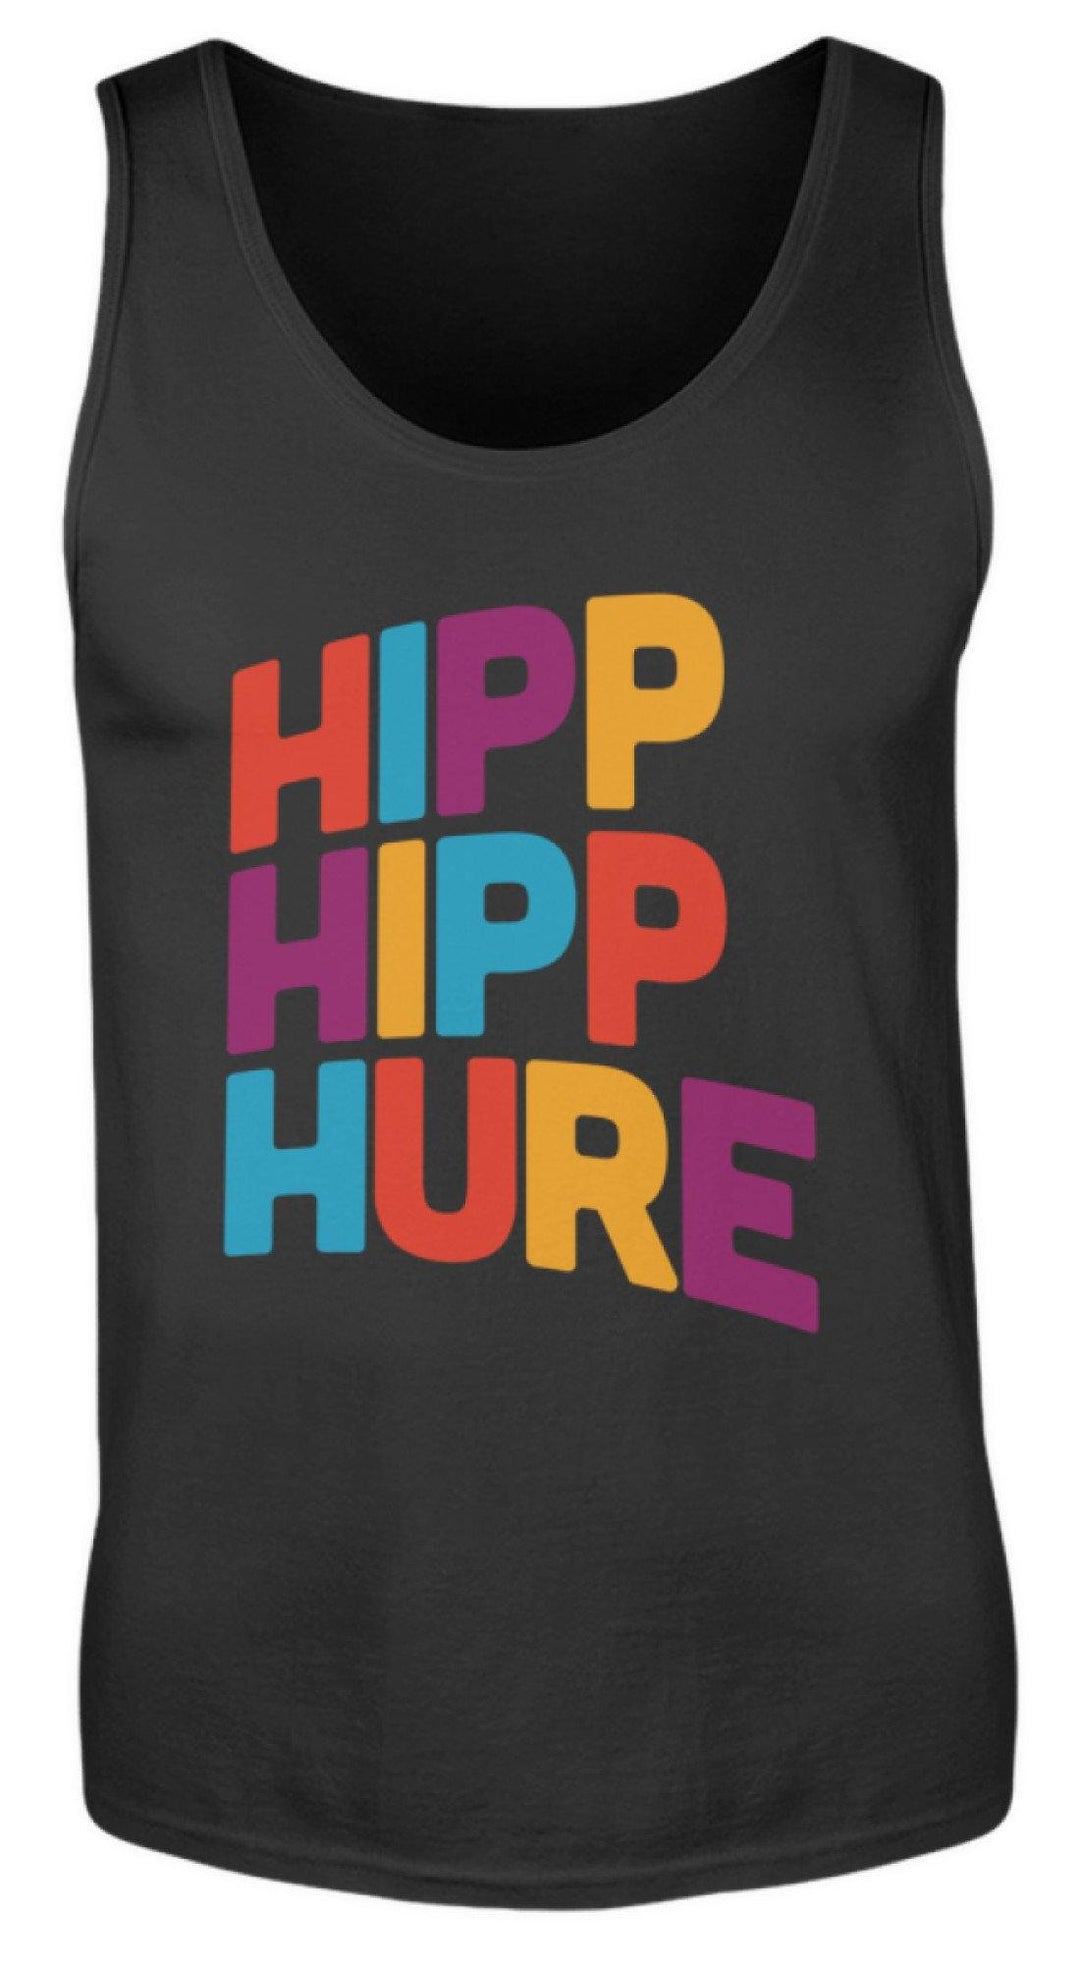 Hipp Hipp Hure- Words on Shirts  - Herren Tanktop - Words on Shirts Sag es mit dem Mittelfinger Shirts Hoodies Sweatshirt Taschen Gymsack Spruch Sprüche Statement